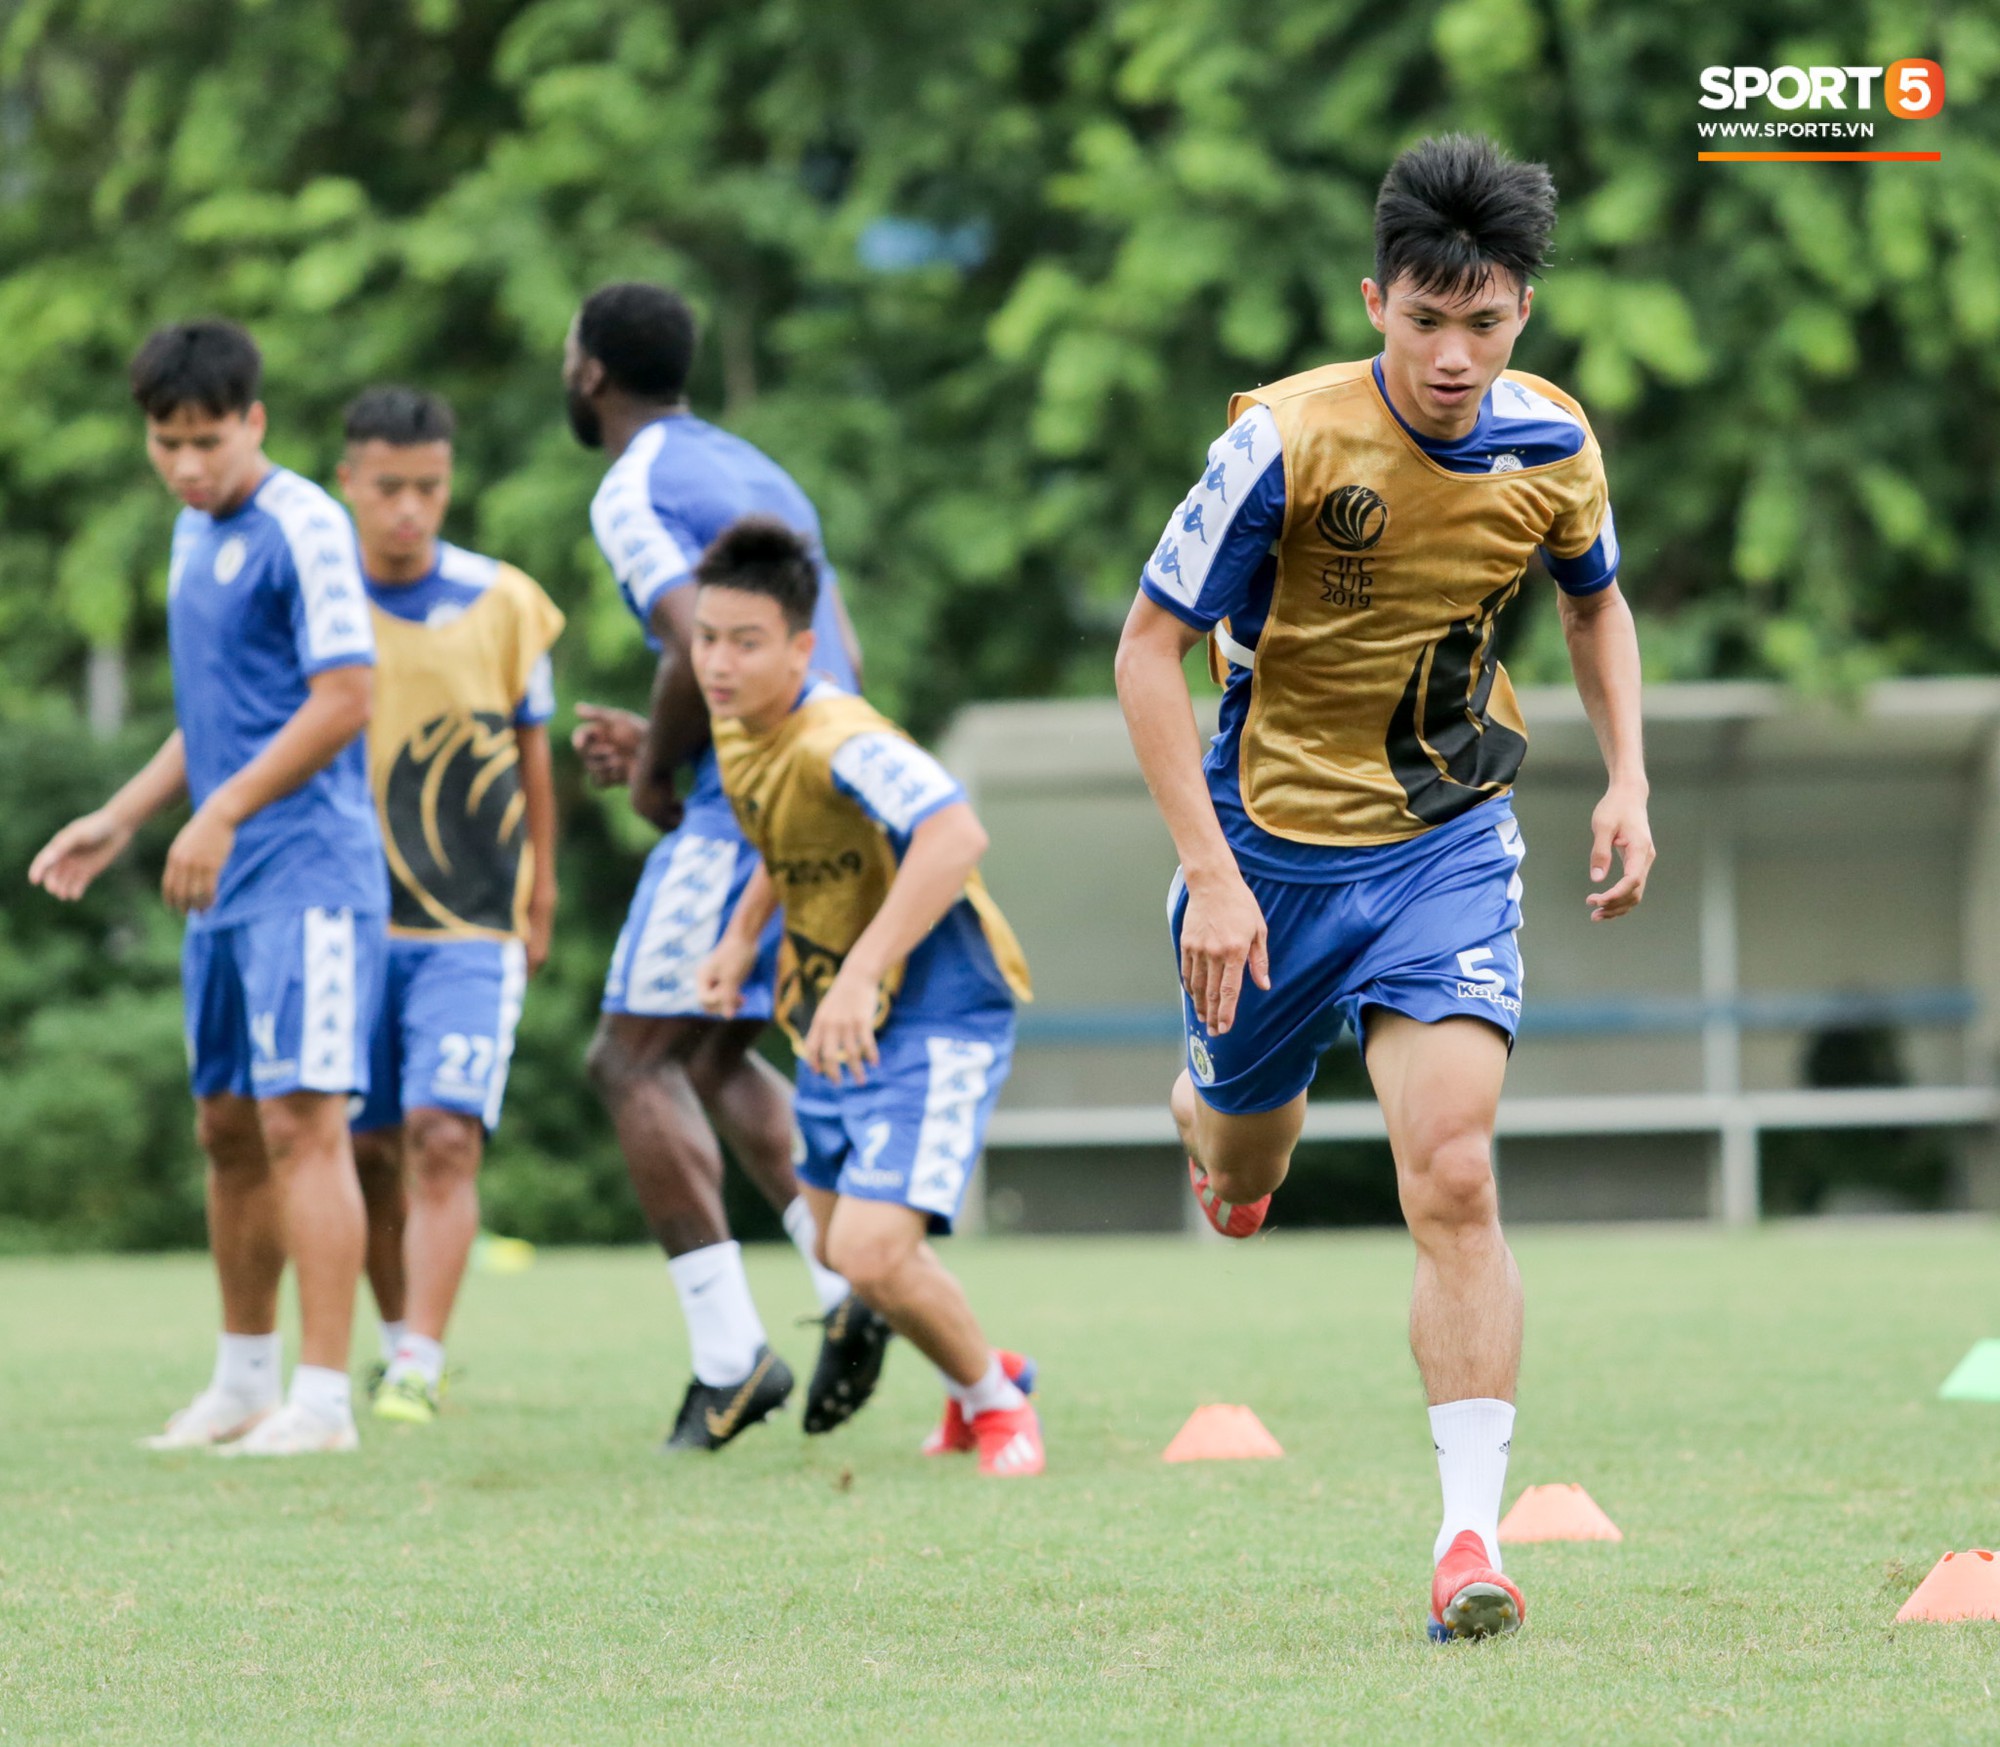 Bùi Tiến Dũng dính đòn, cầu thủ trẻ Hà Nội FC lấy ve sầu trêu đồng đội trước trận bán kết lượt về AFC Cup - Ảnh 1.